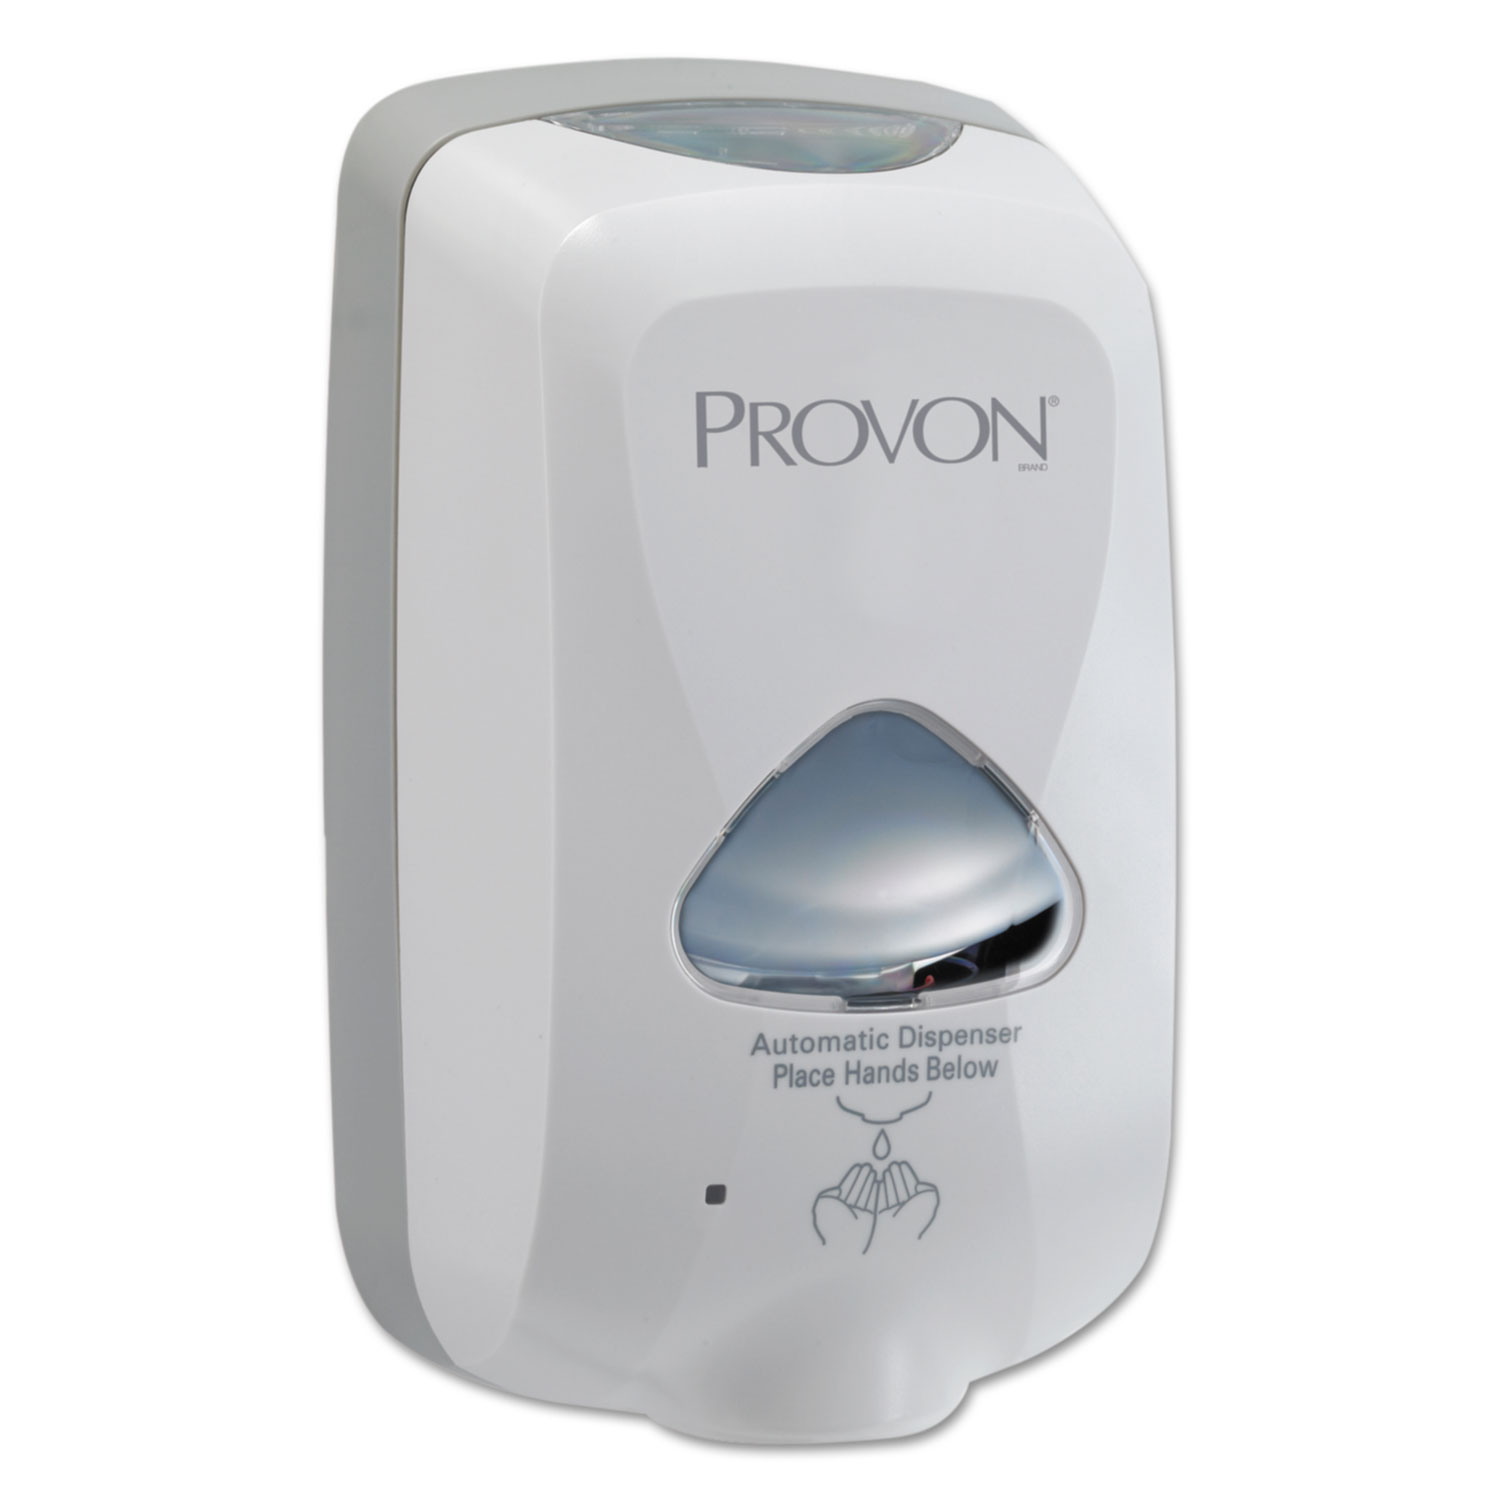  PROVON 2745-12 TFX Touch Free Dispenser, 1200 mL, 6 x 4 x 10.5, Dove Gray (GOJ274512) 